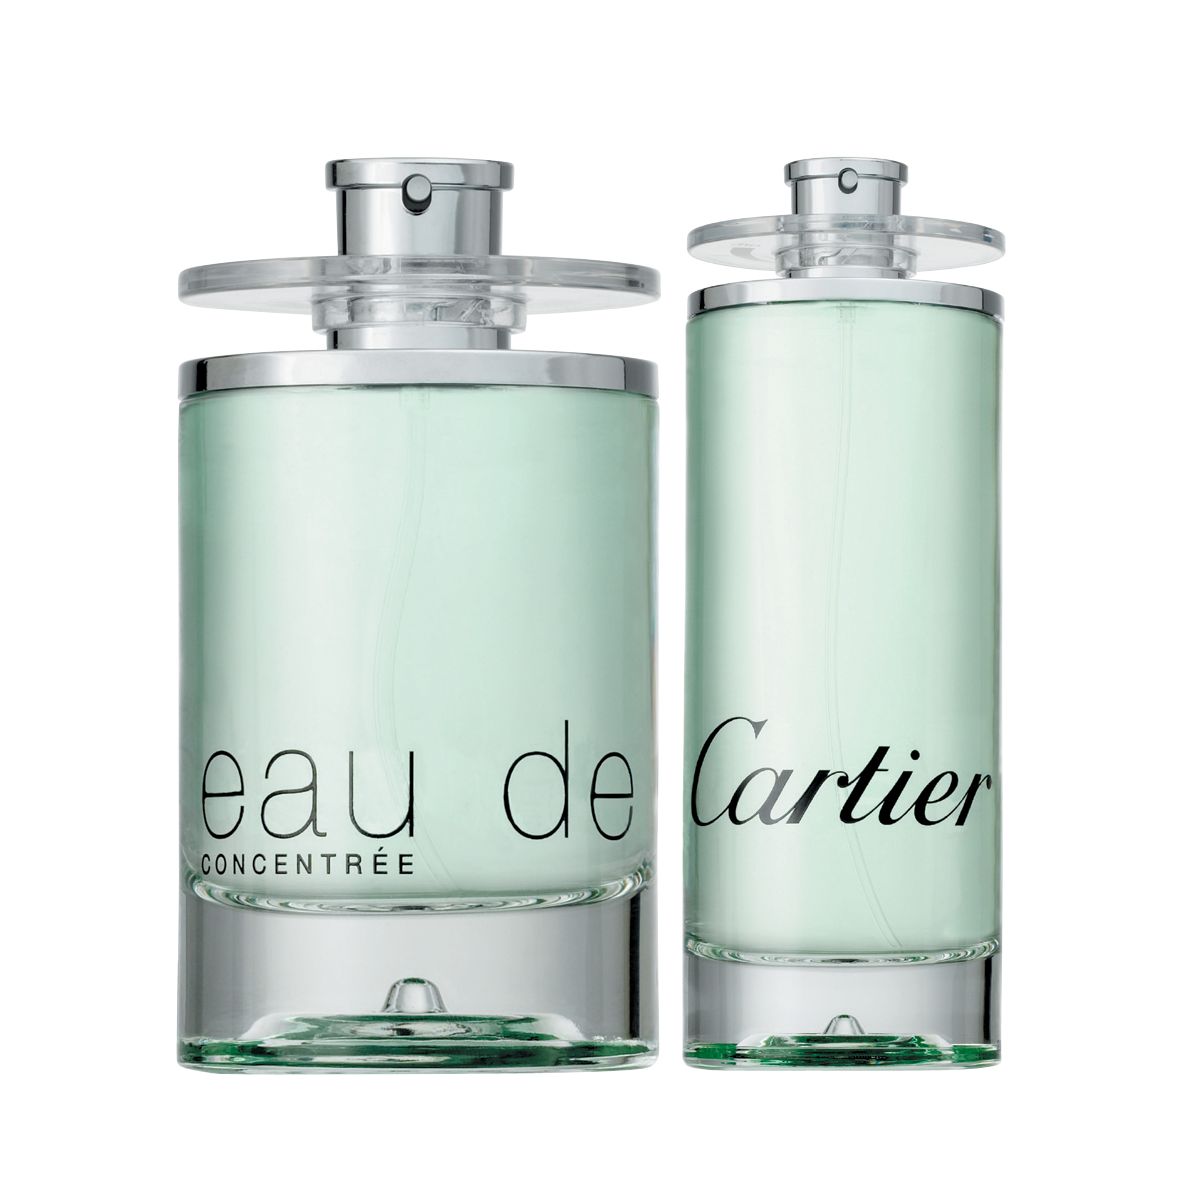 Cartier Eau de Cartier Eau de Toilette Concentrate, 200ml